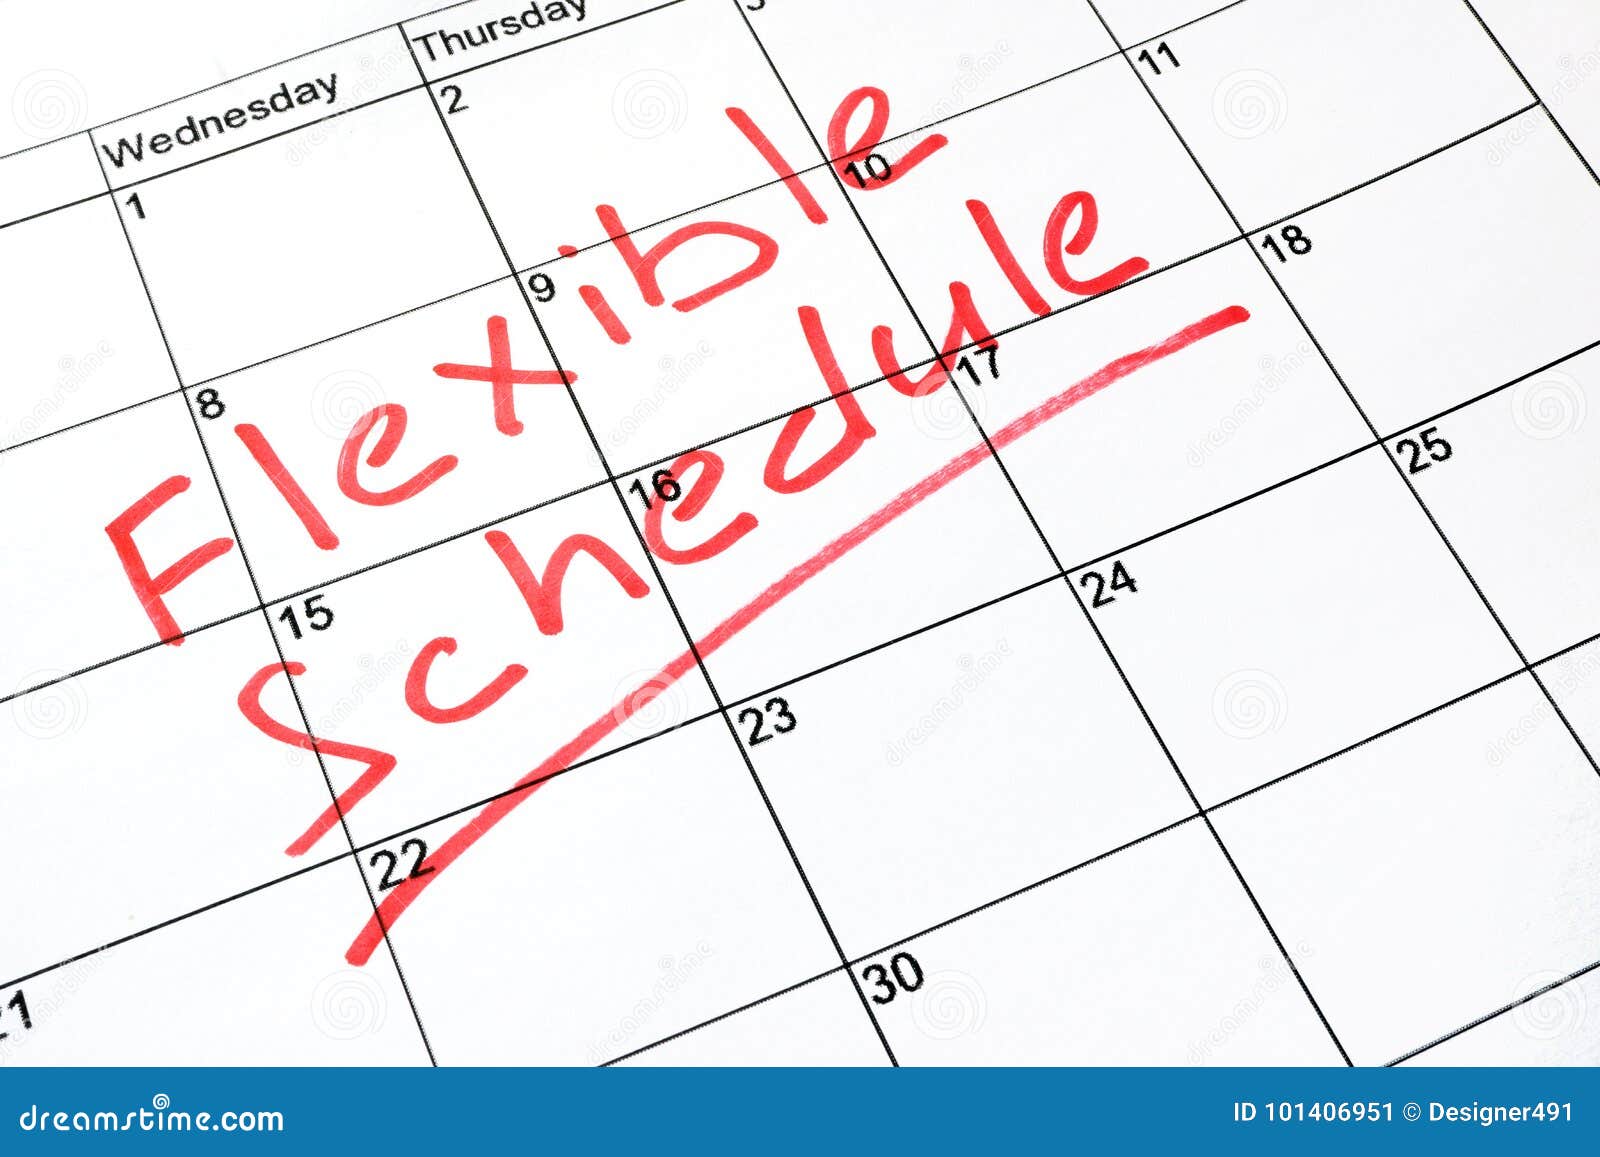 flexible schedule.